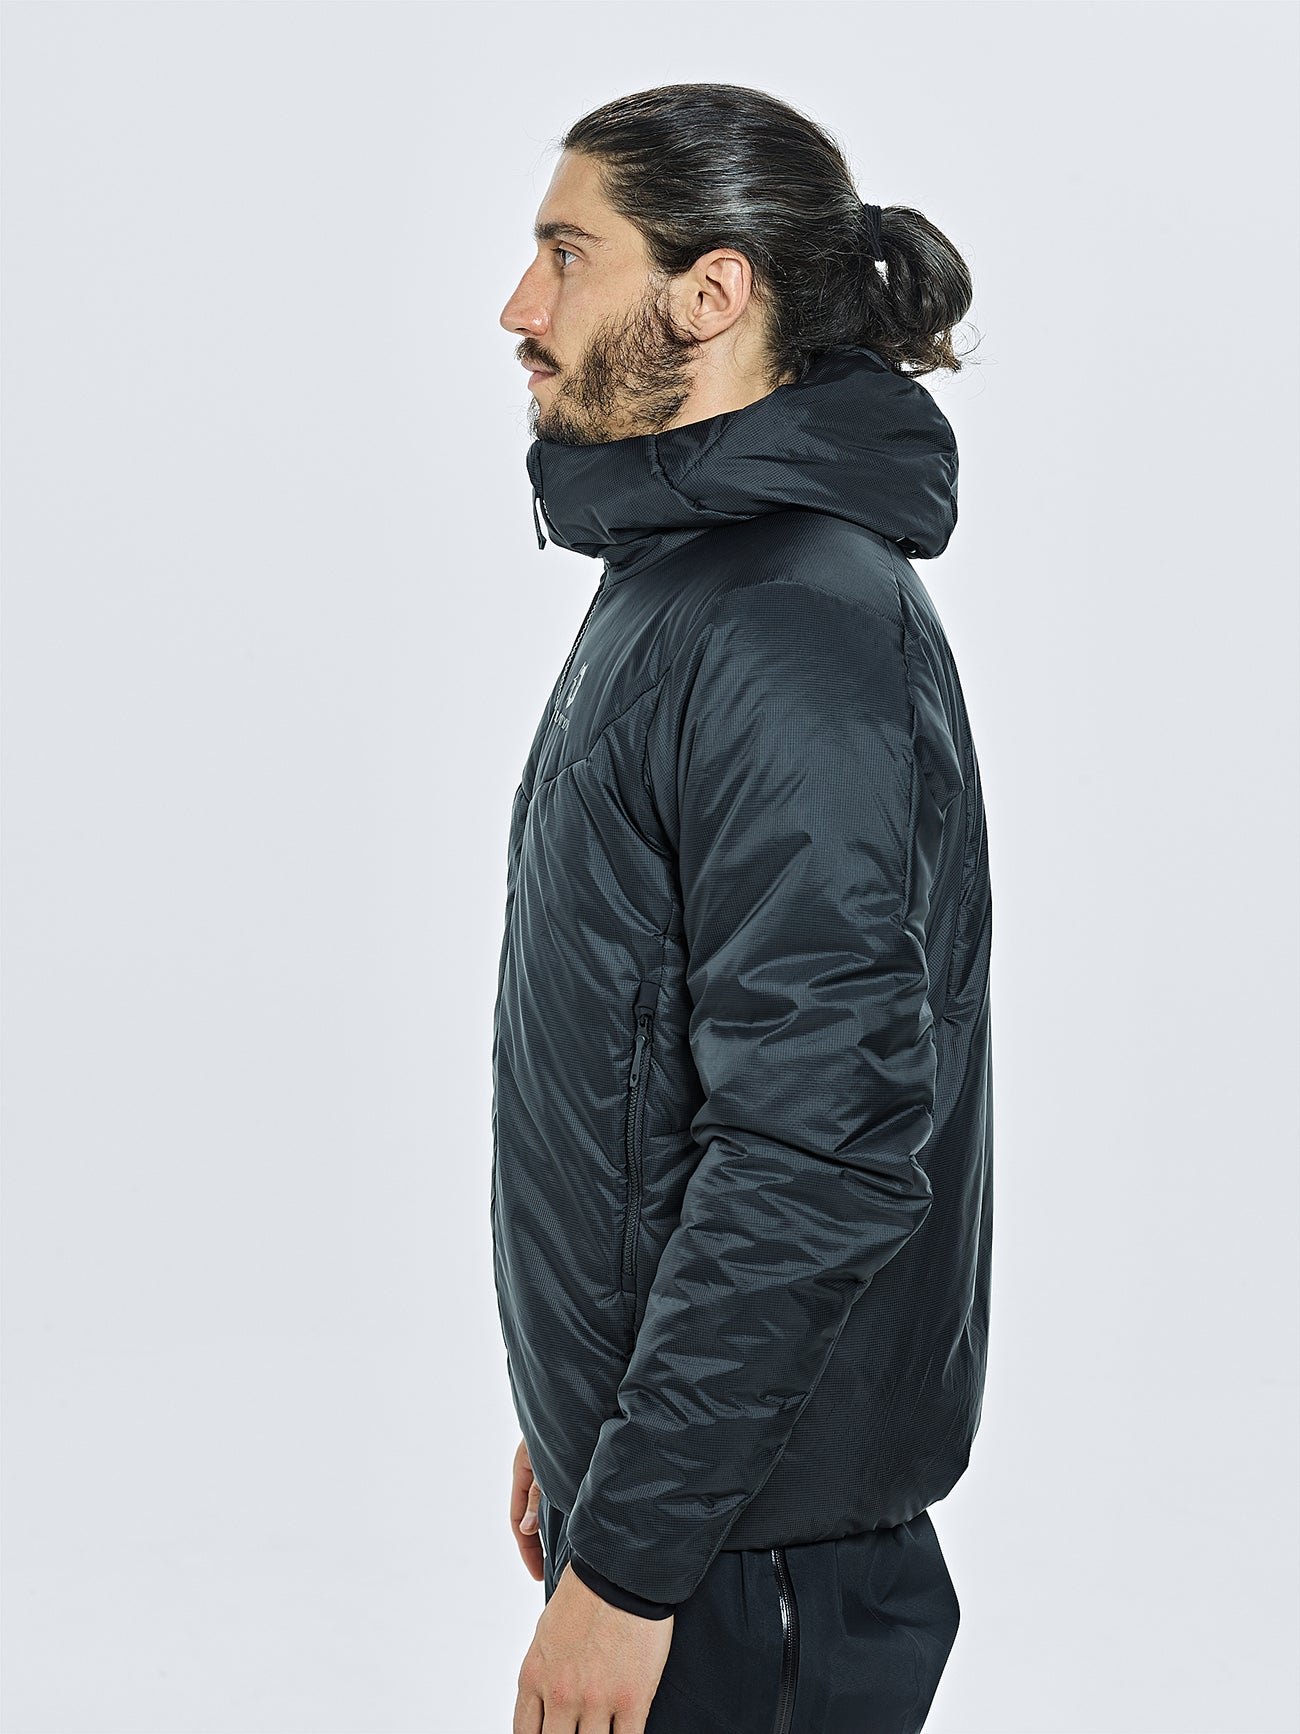 Norse Store  Shipping Worldwide - Snow Peak Fleece Hybrid Jacket